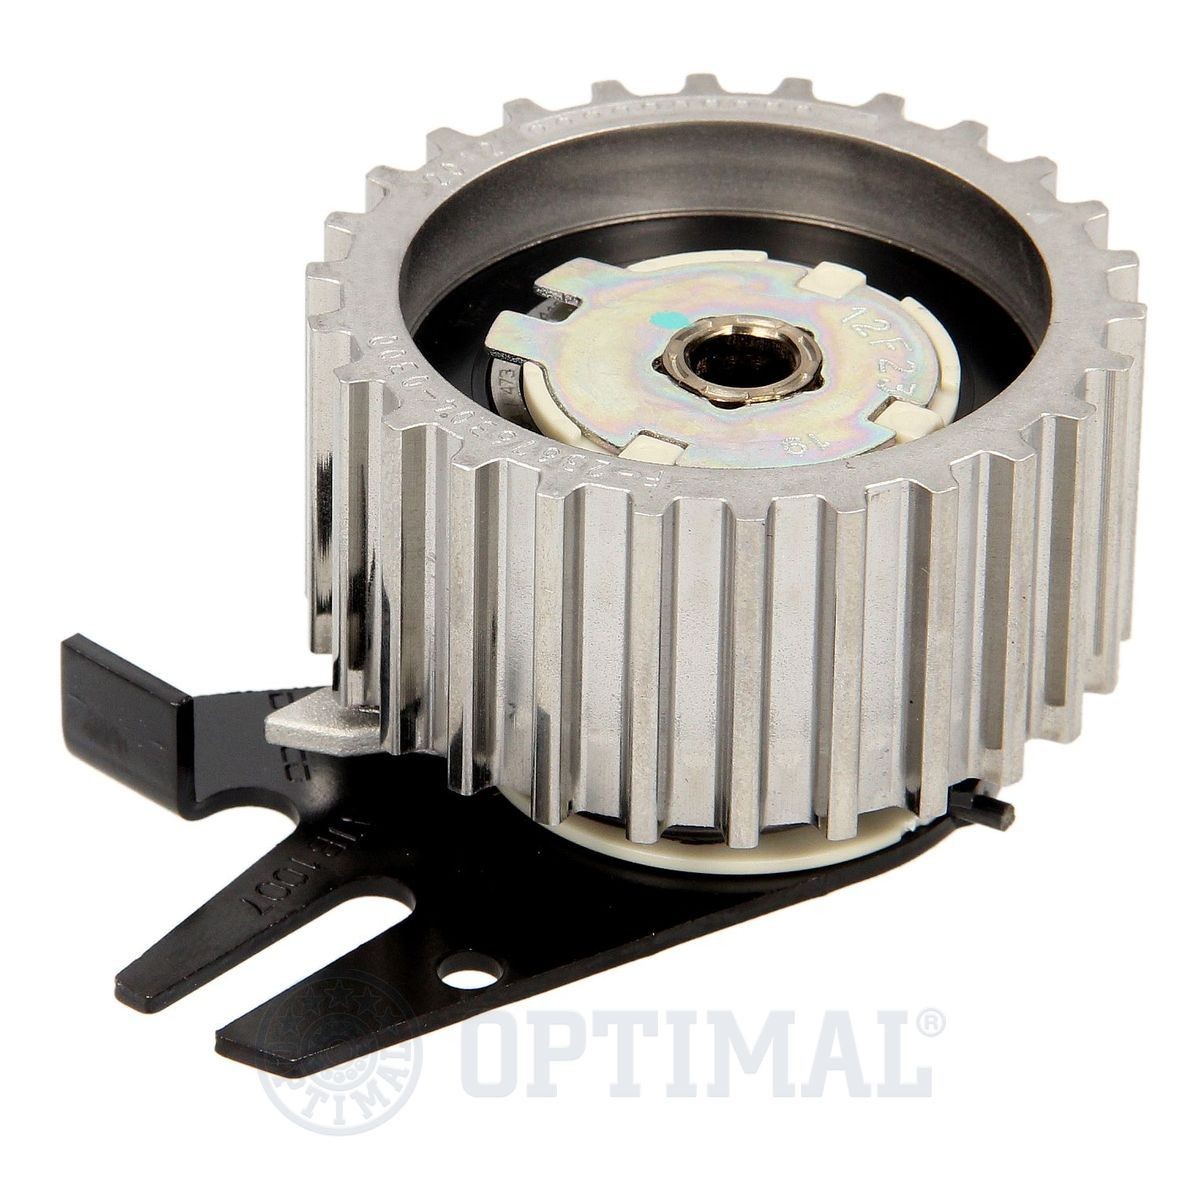 OPTIMAL 0-N115 Timing belt tensioner pulley